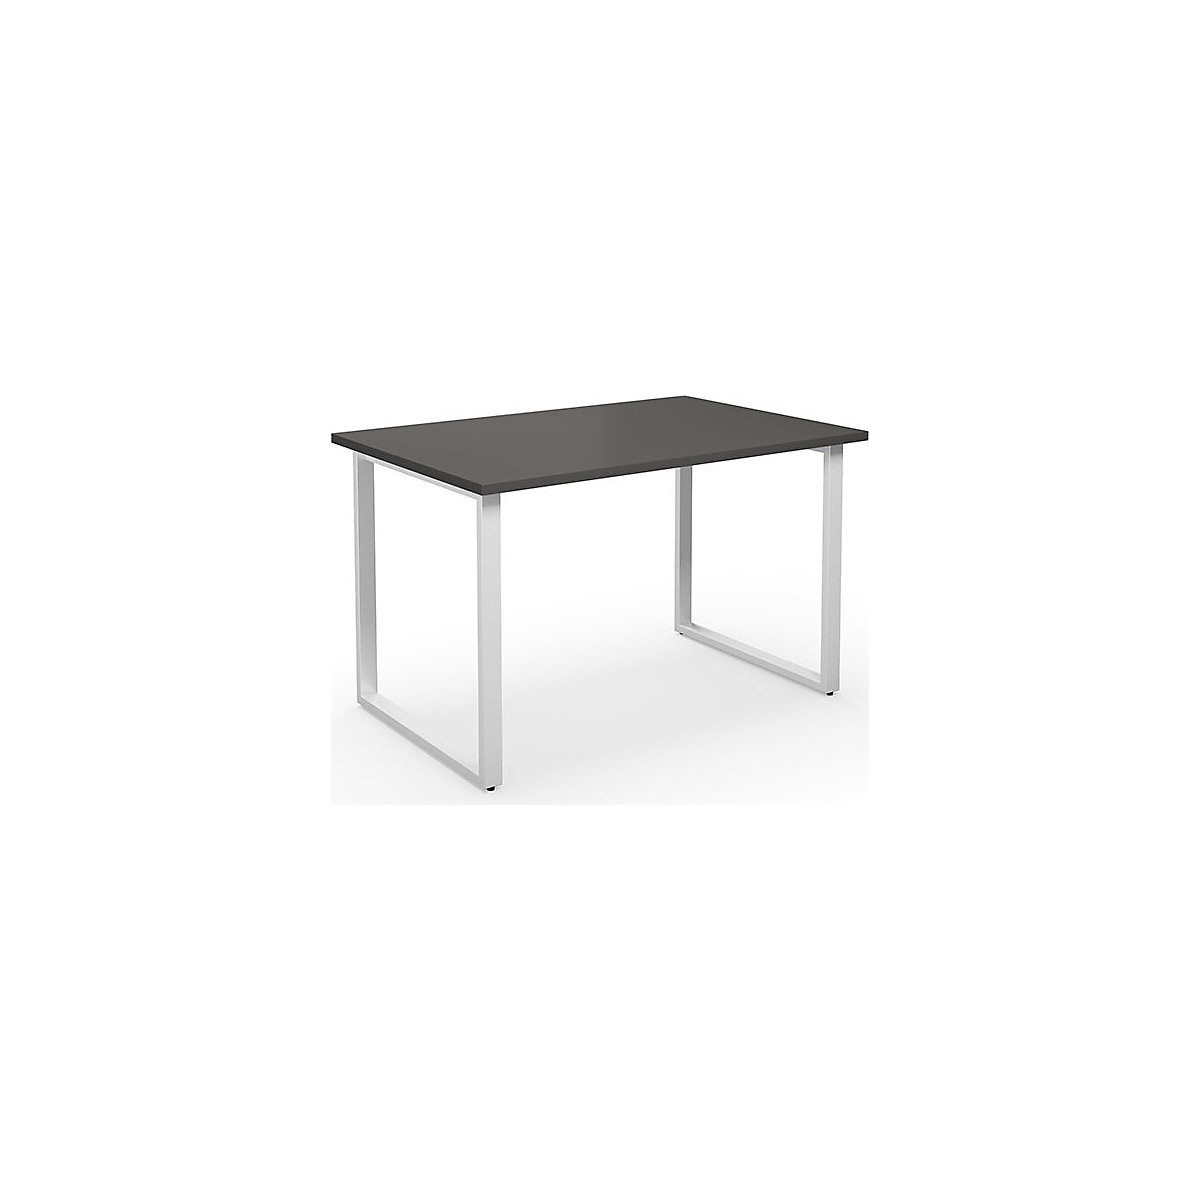 DUO-O multi-purpose desk, straight tabletop, WxD 1200 x 800 mm, dark grey, white-17